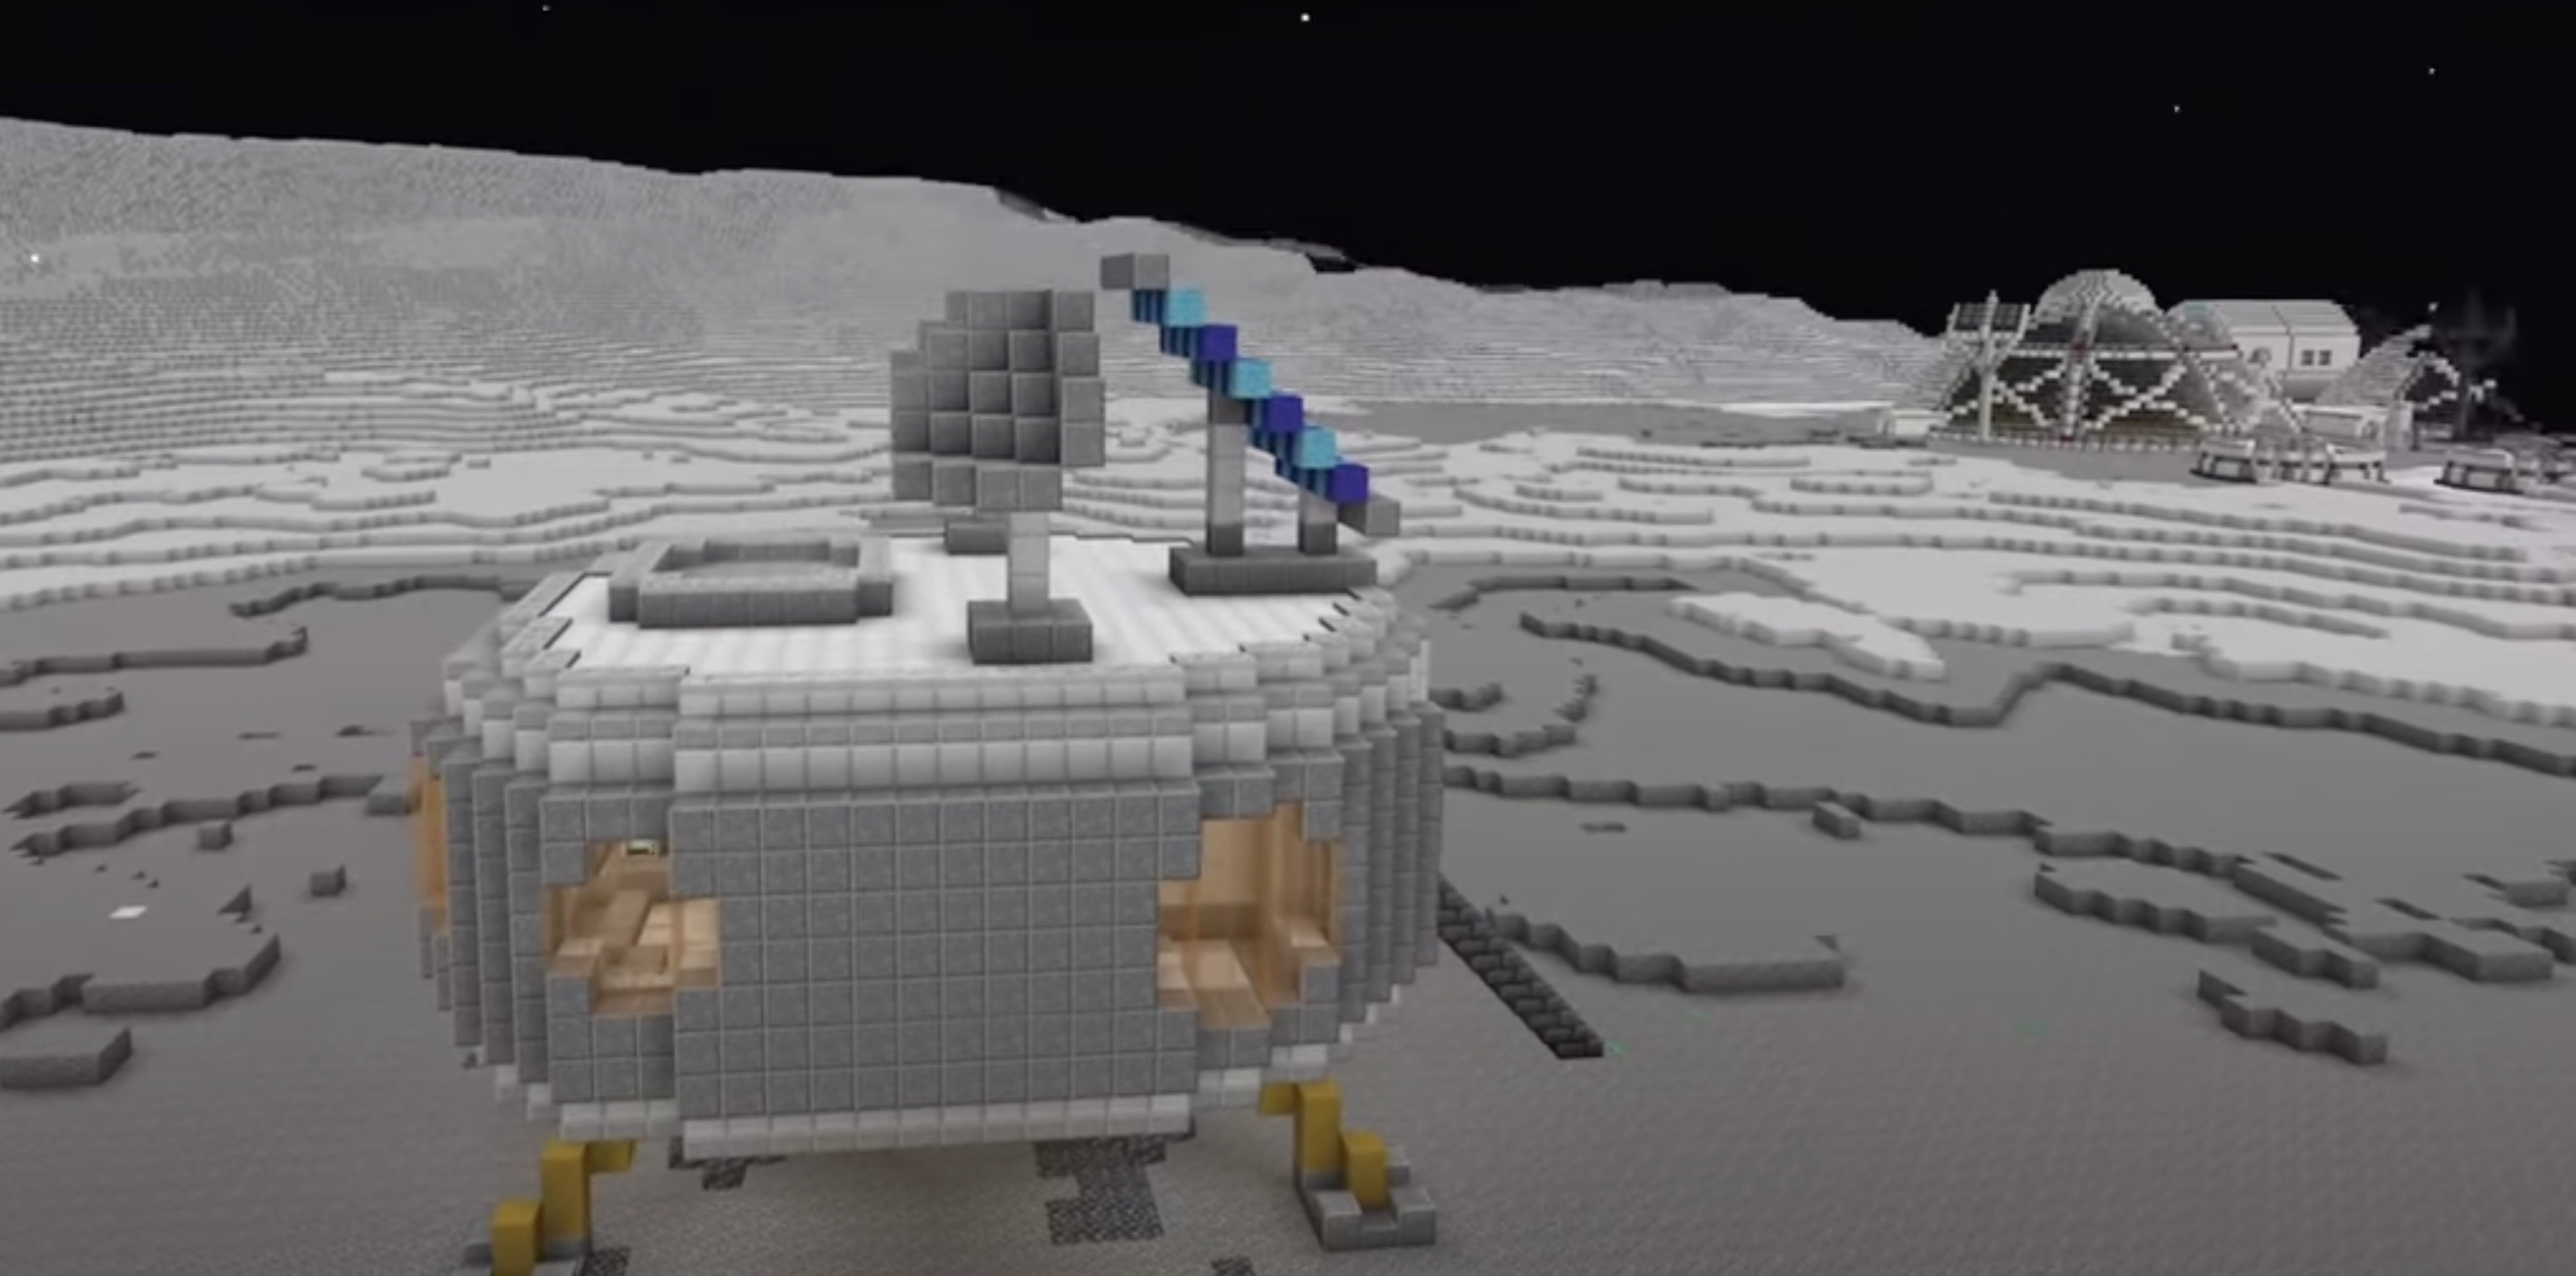 Появился «лунный» аналог Minecraft, где можно осваивать ландшафт спутника Земли